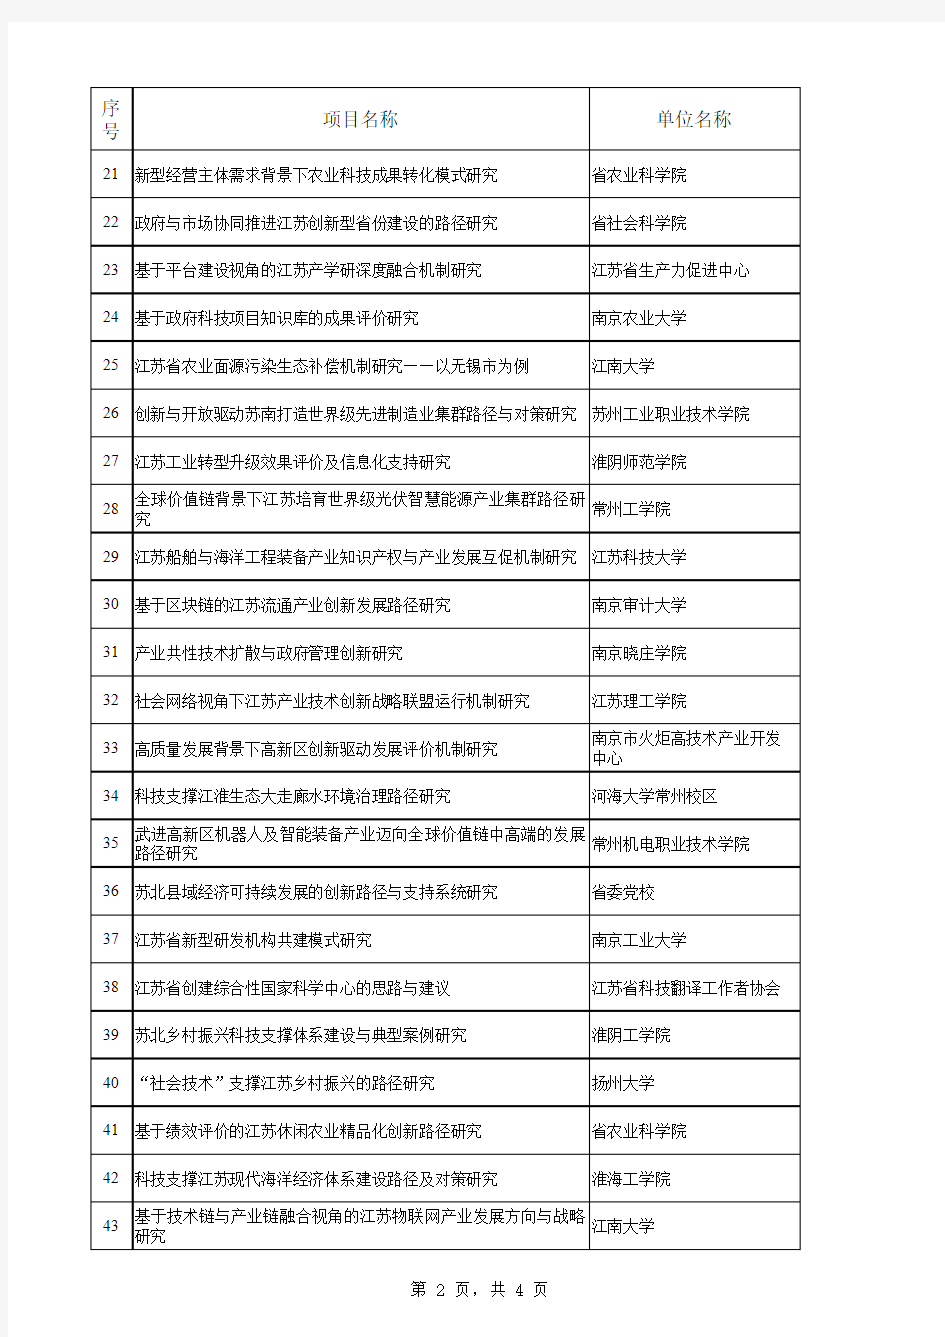 2018江苏省软科学拟立项目公示